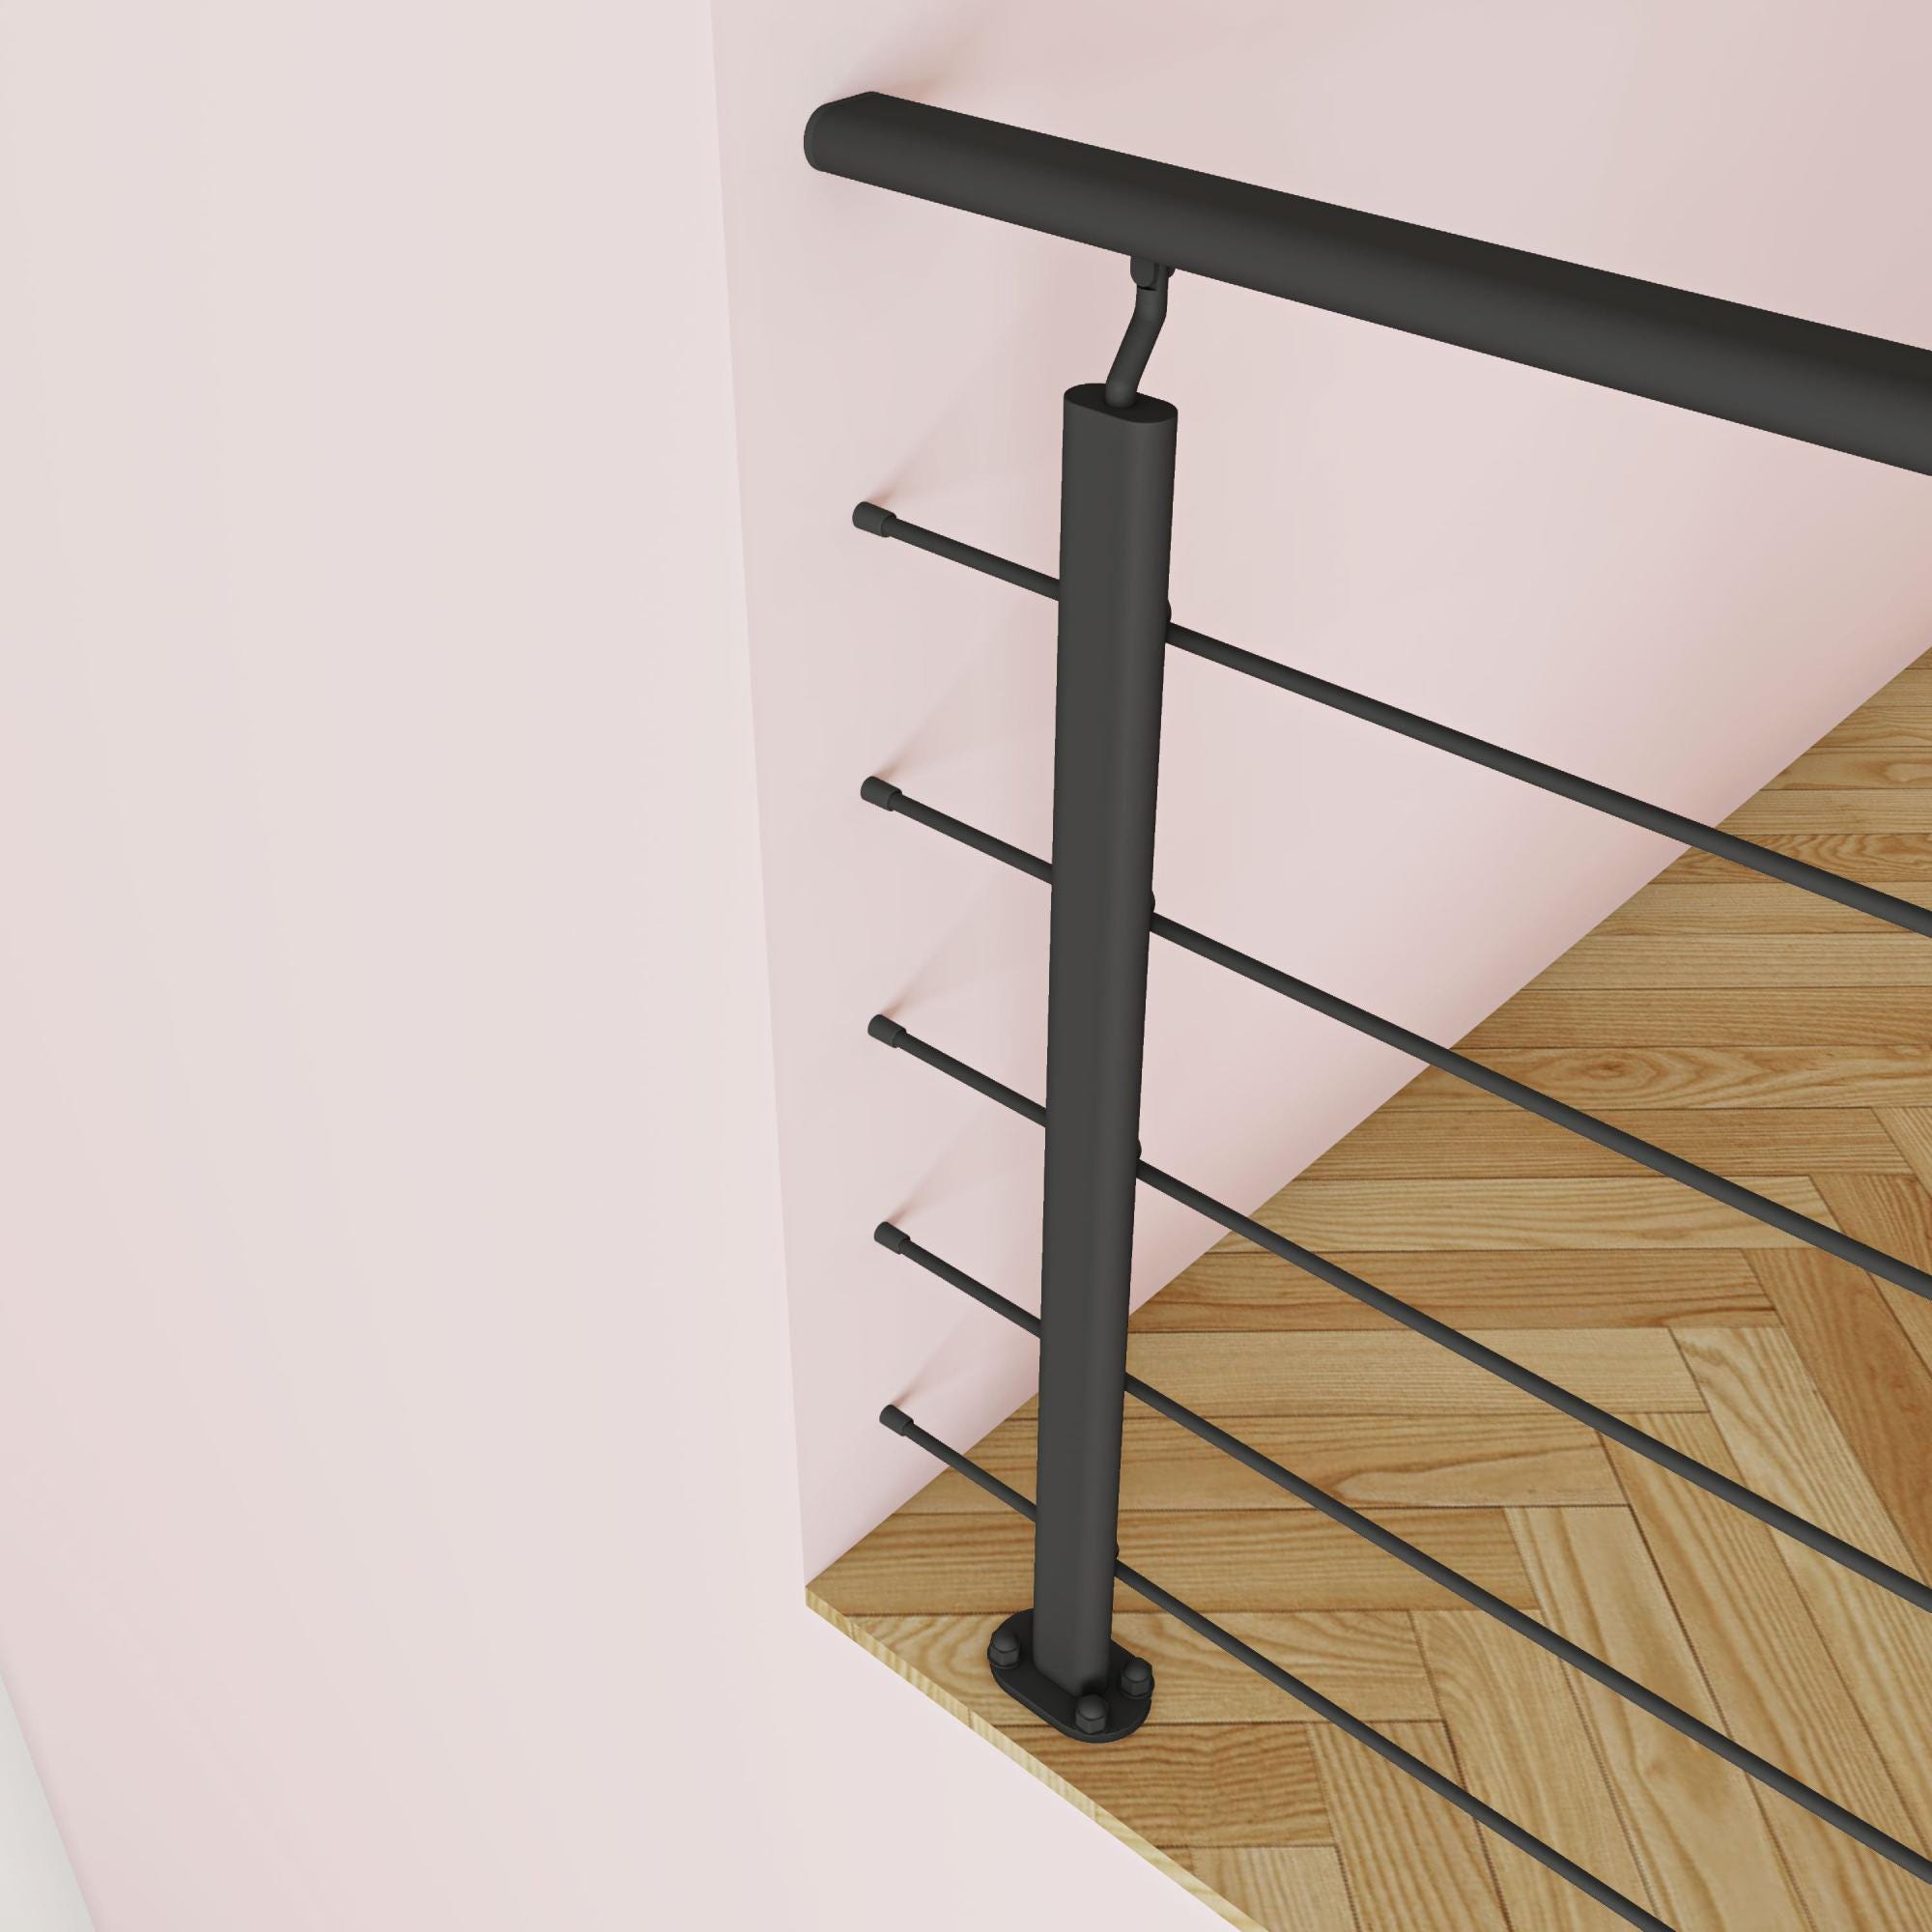 Kit de protection d'escalier - Longueur 2ml avec 5 barreaux, fixation verticale intérieure et extérieure 4